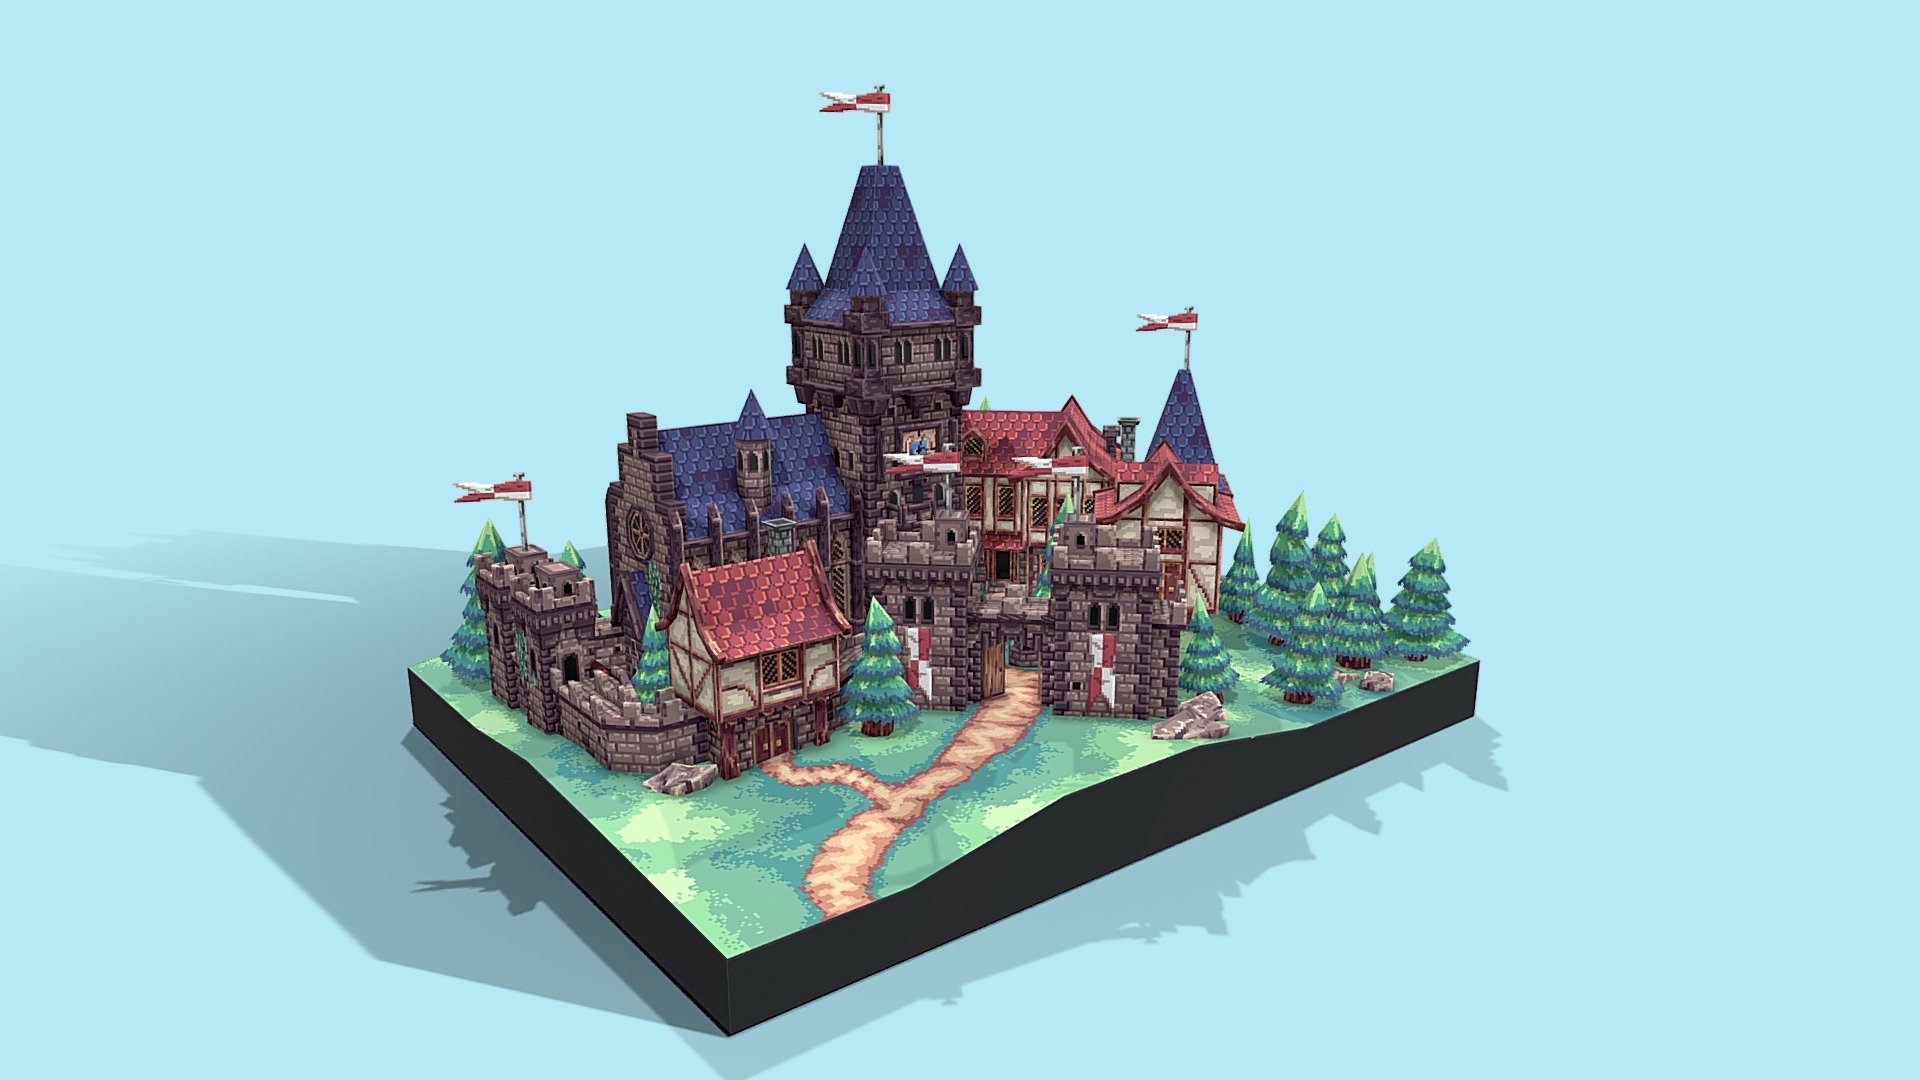 A pixelart 3D low poly model of a made-up medieval town - Low-Poly Pixelart Medieval Town - 3D model by Vancient 3d model